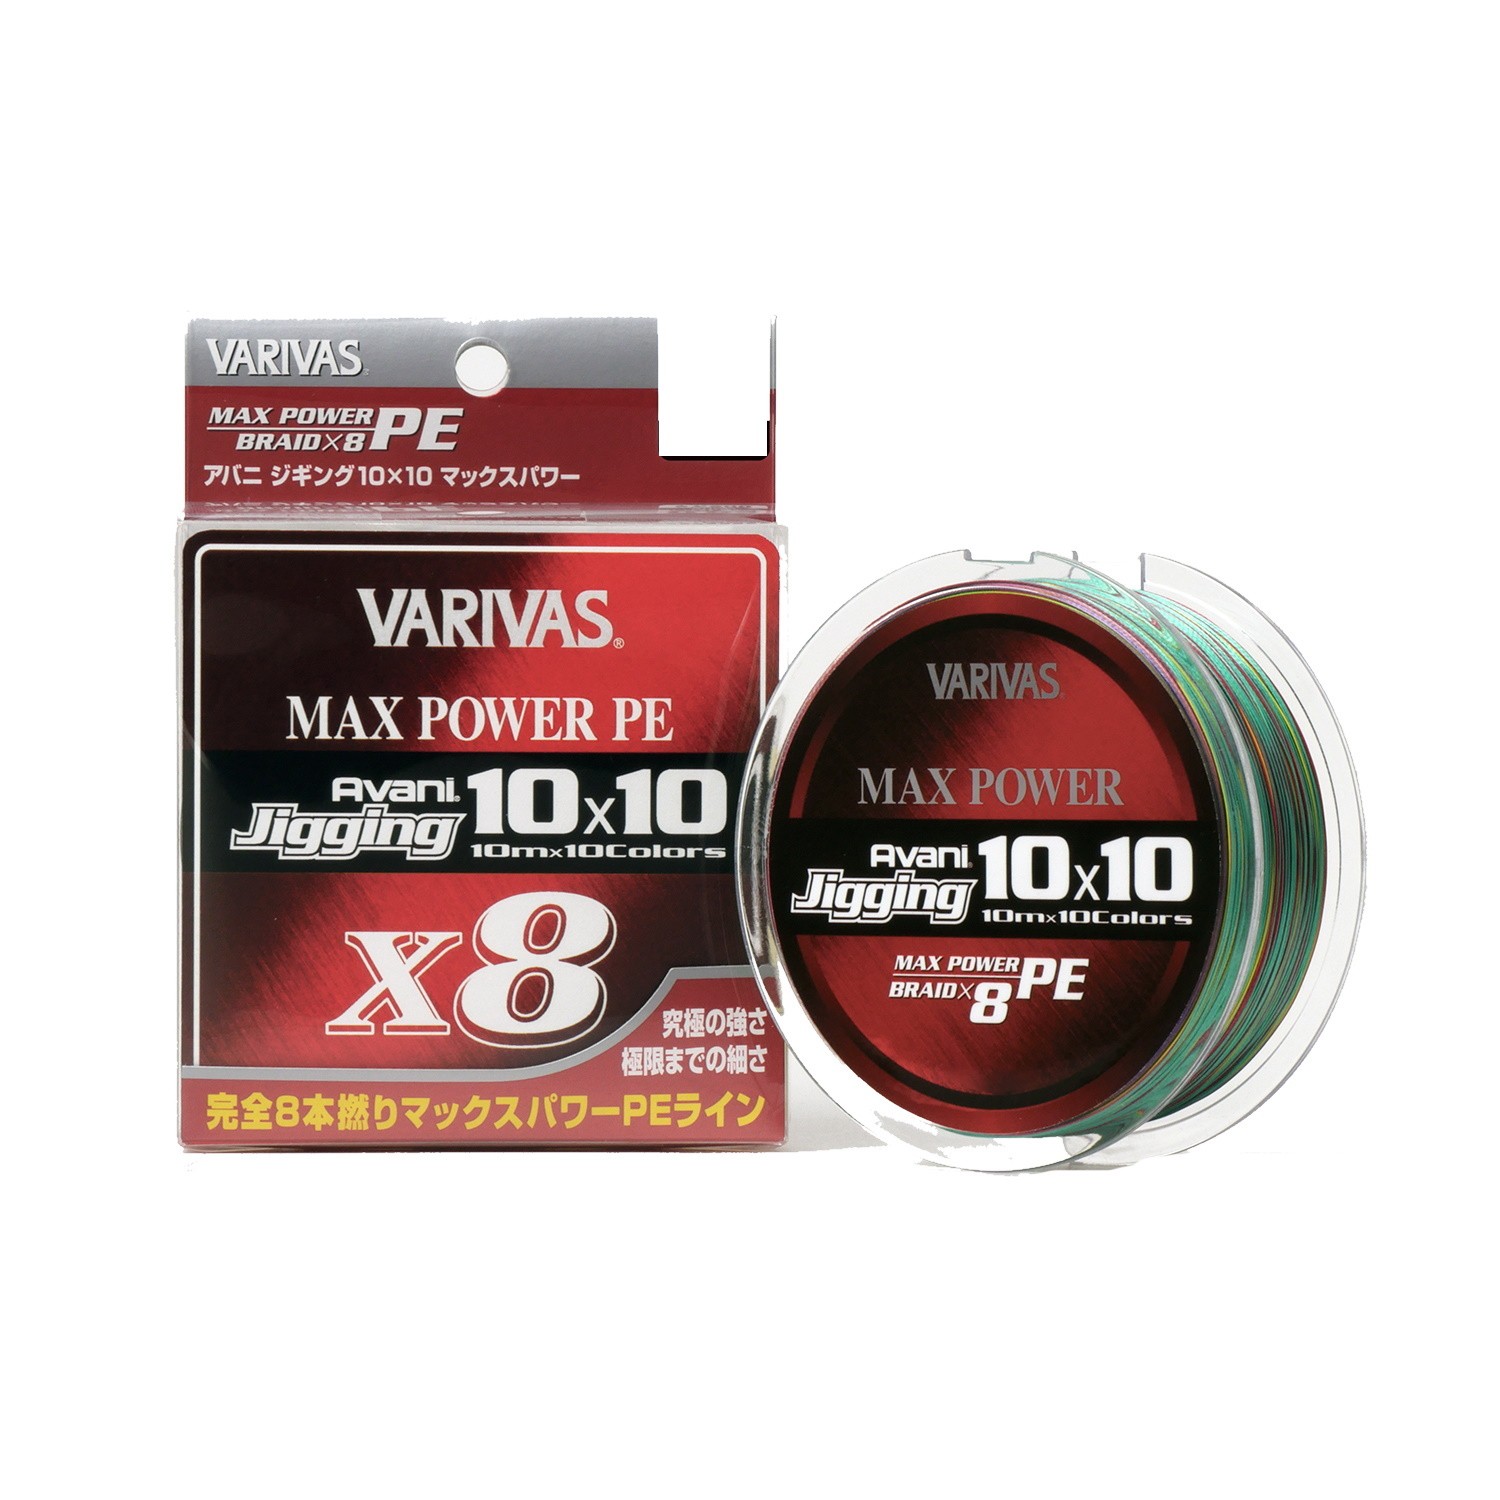 Шнур Varivas Avani Jigging 10x10 Max Power PE X8 200м PE 0.8 - фото 1